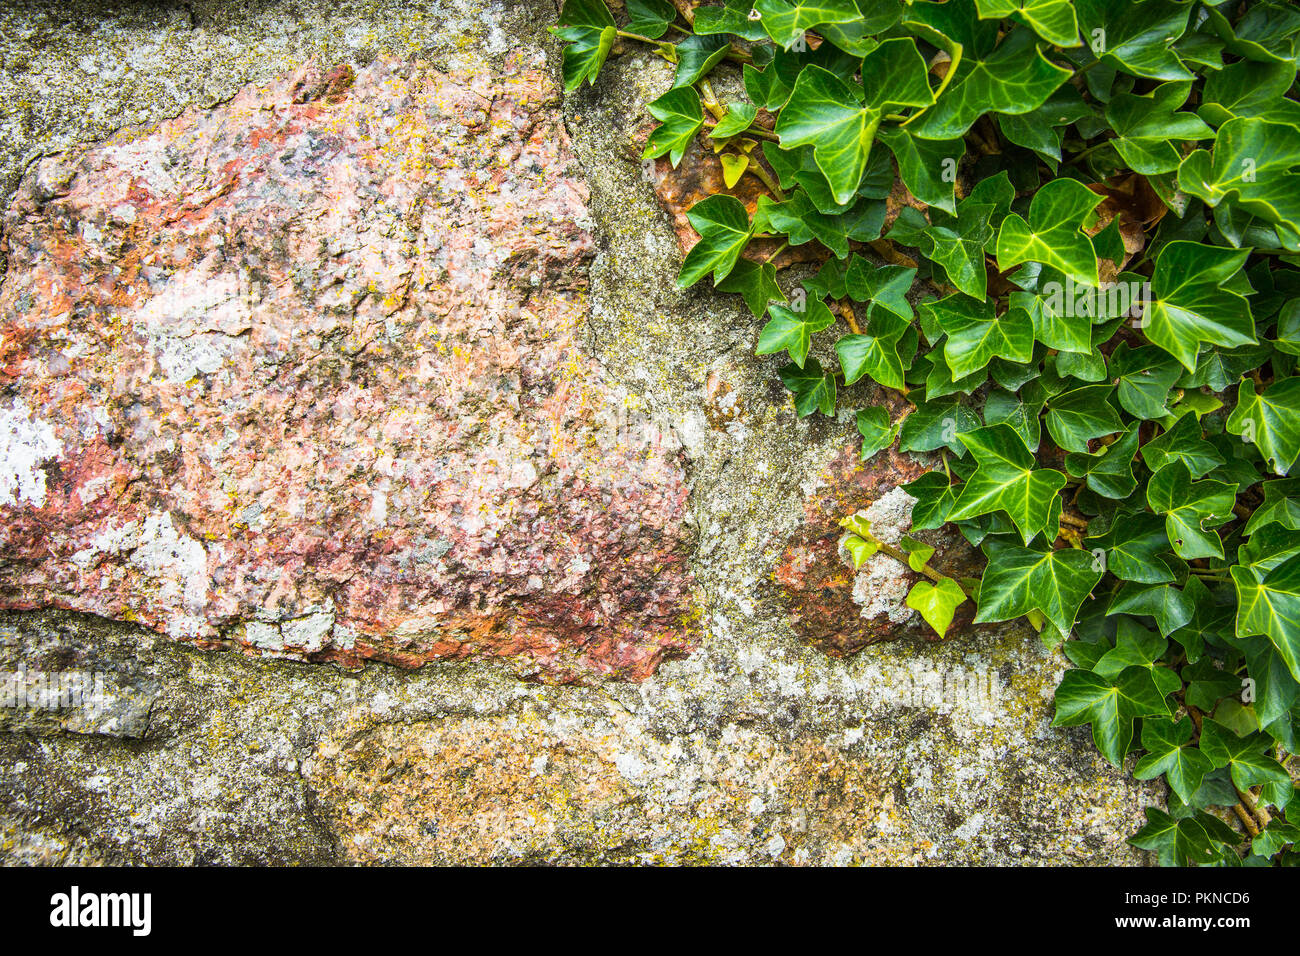 Eine natur oder Gartenarbeit Hintergrund einer texturierten Steinmauer mit der üppigen grünen Laub einer schleichenden Efeu wachsen auf mit Kopie Raum Stockfoto